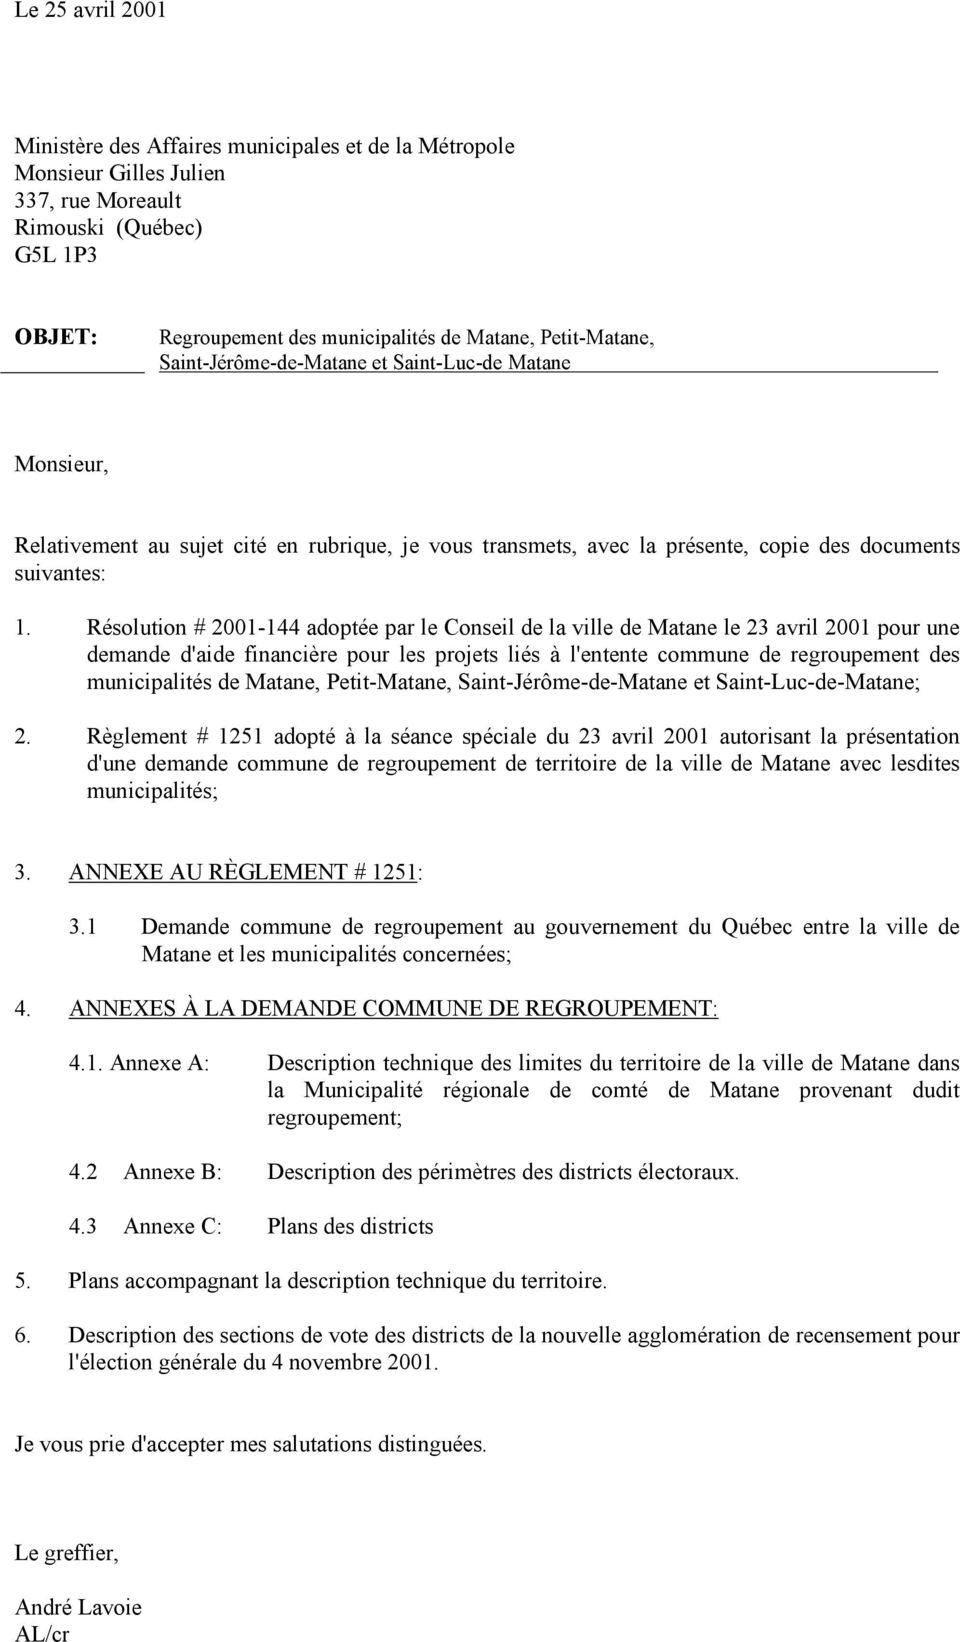 Résolution # 2001144 adoptée par le Conseil de la ville de Matane le 23 avril 2001 pour une demande d'aide financière pour les projets liés à l'entente commune de regroupement des municipalités de